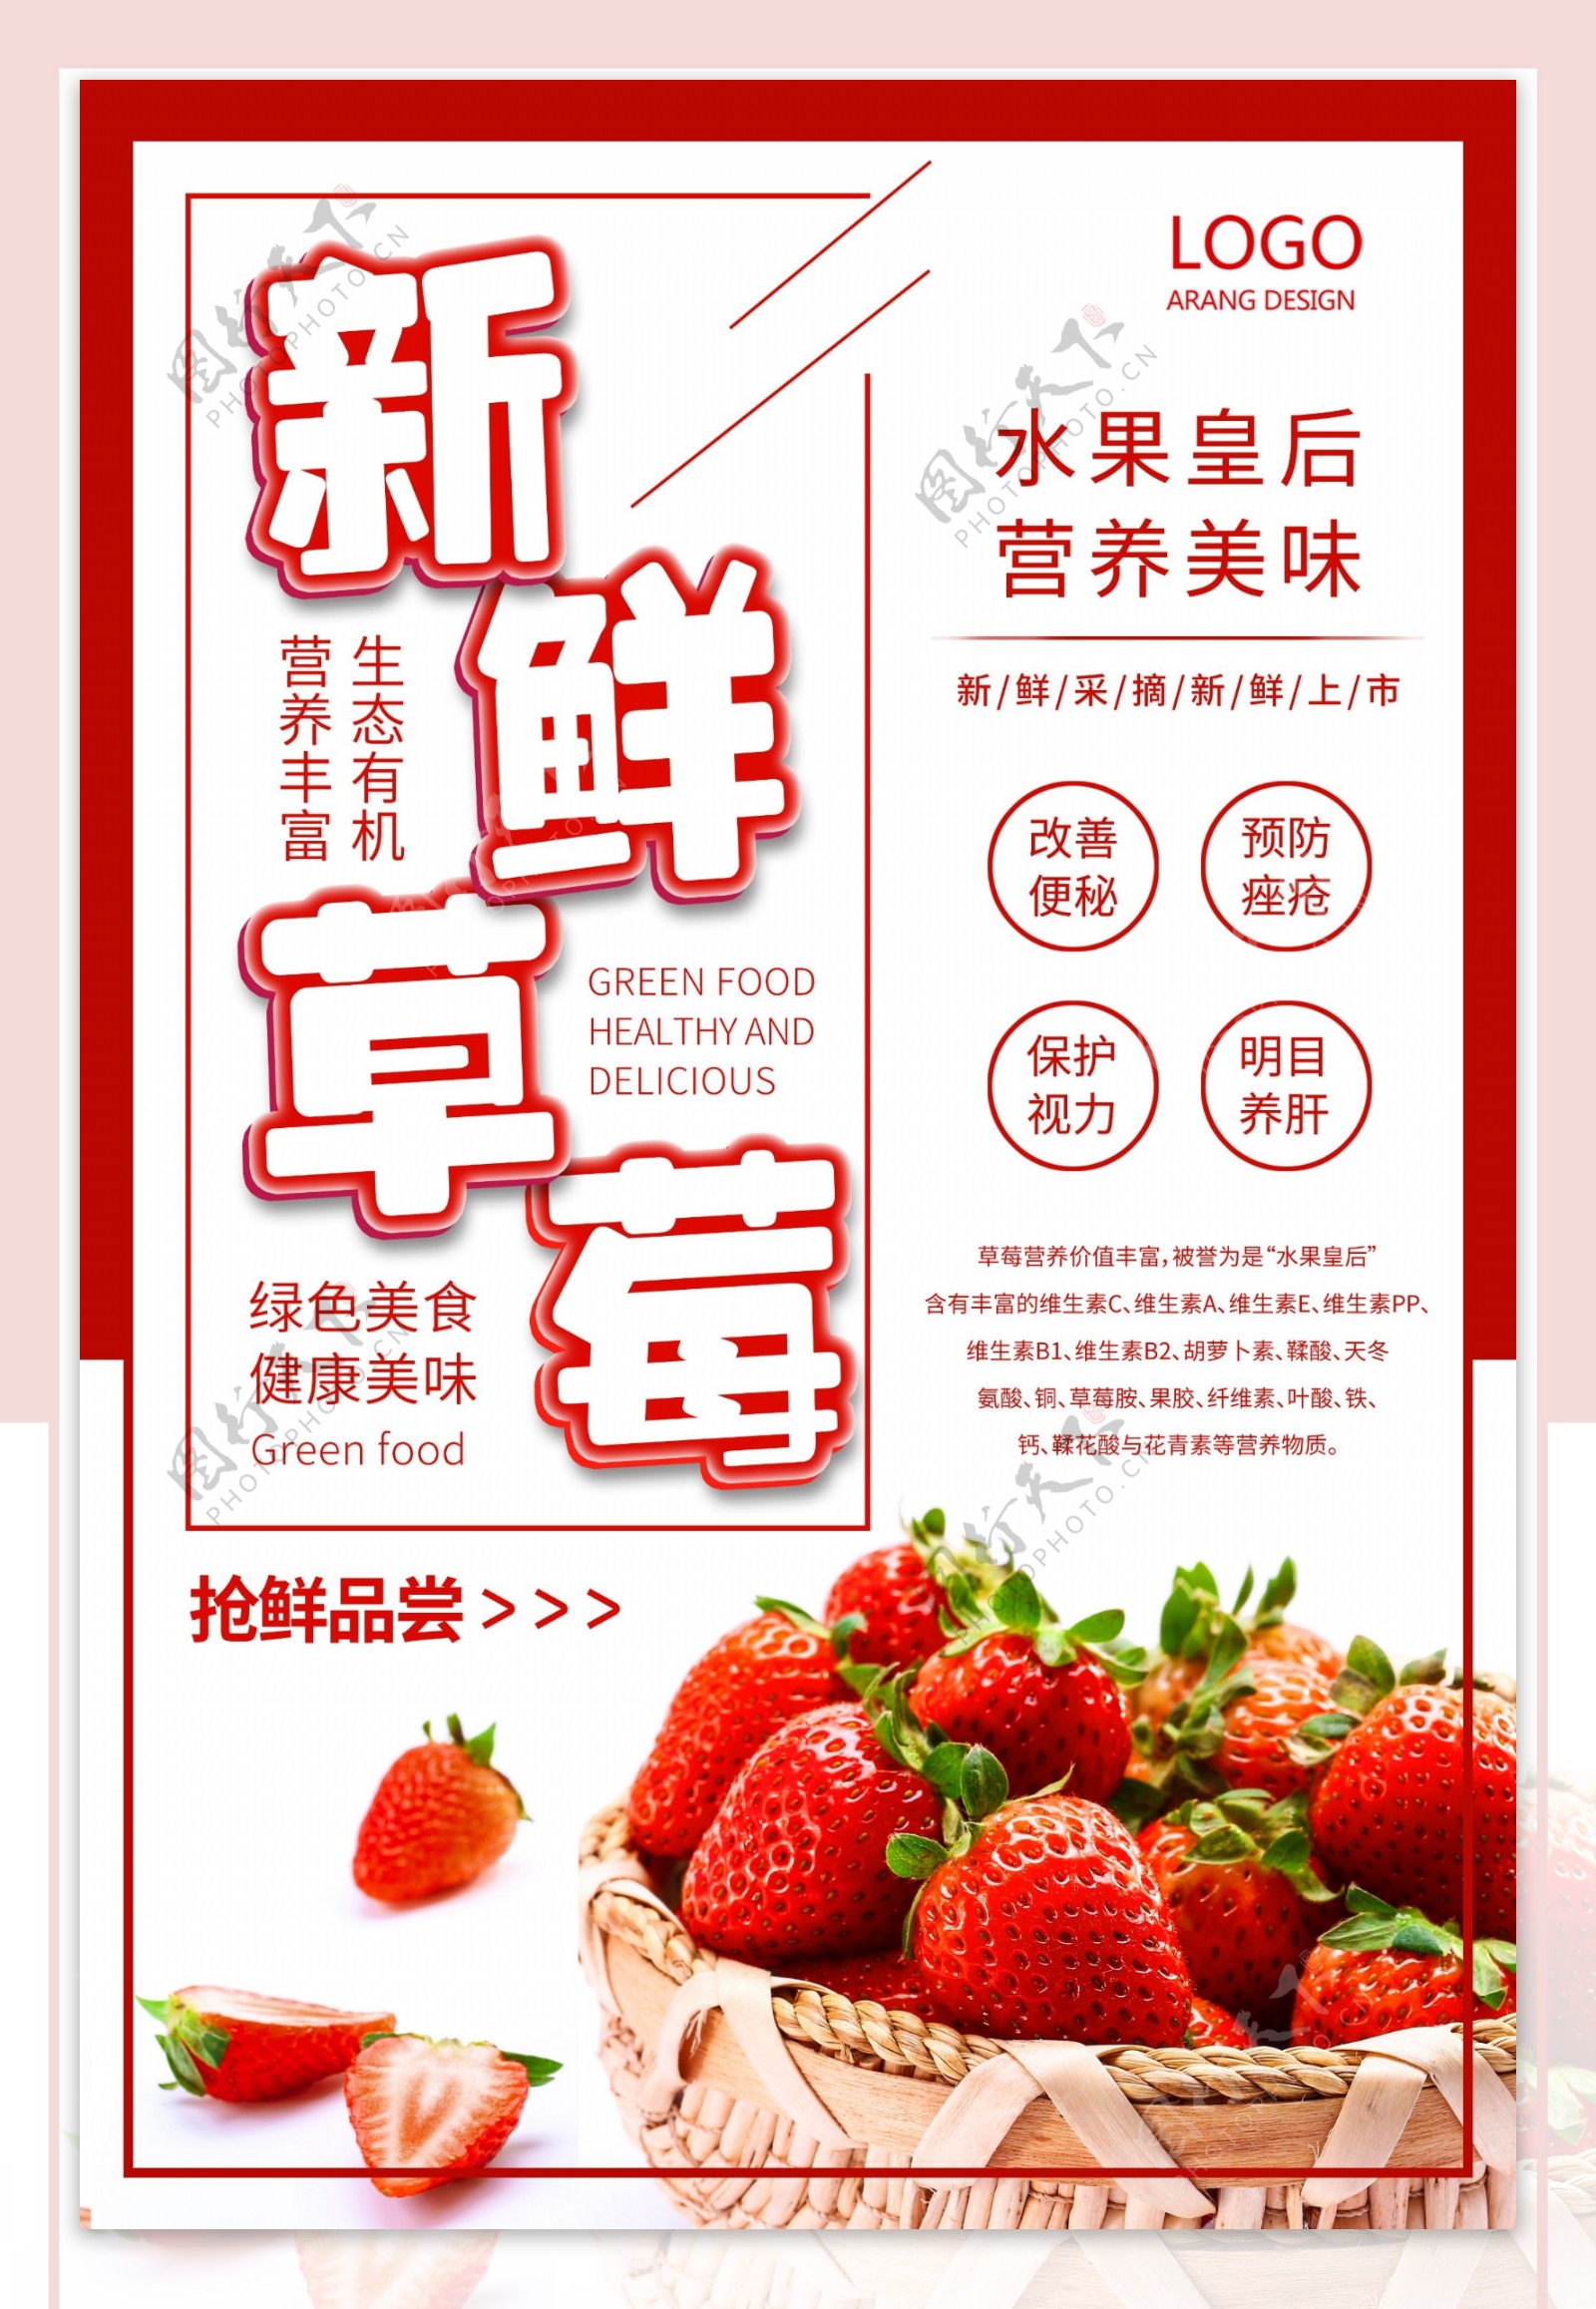 新鲜草莓促销海报